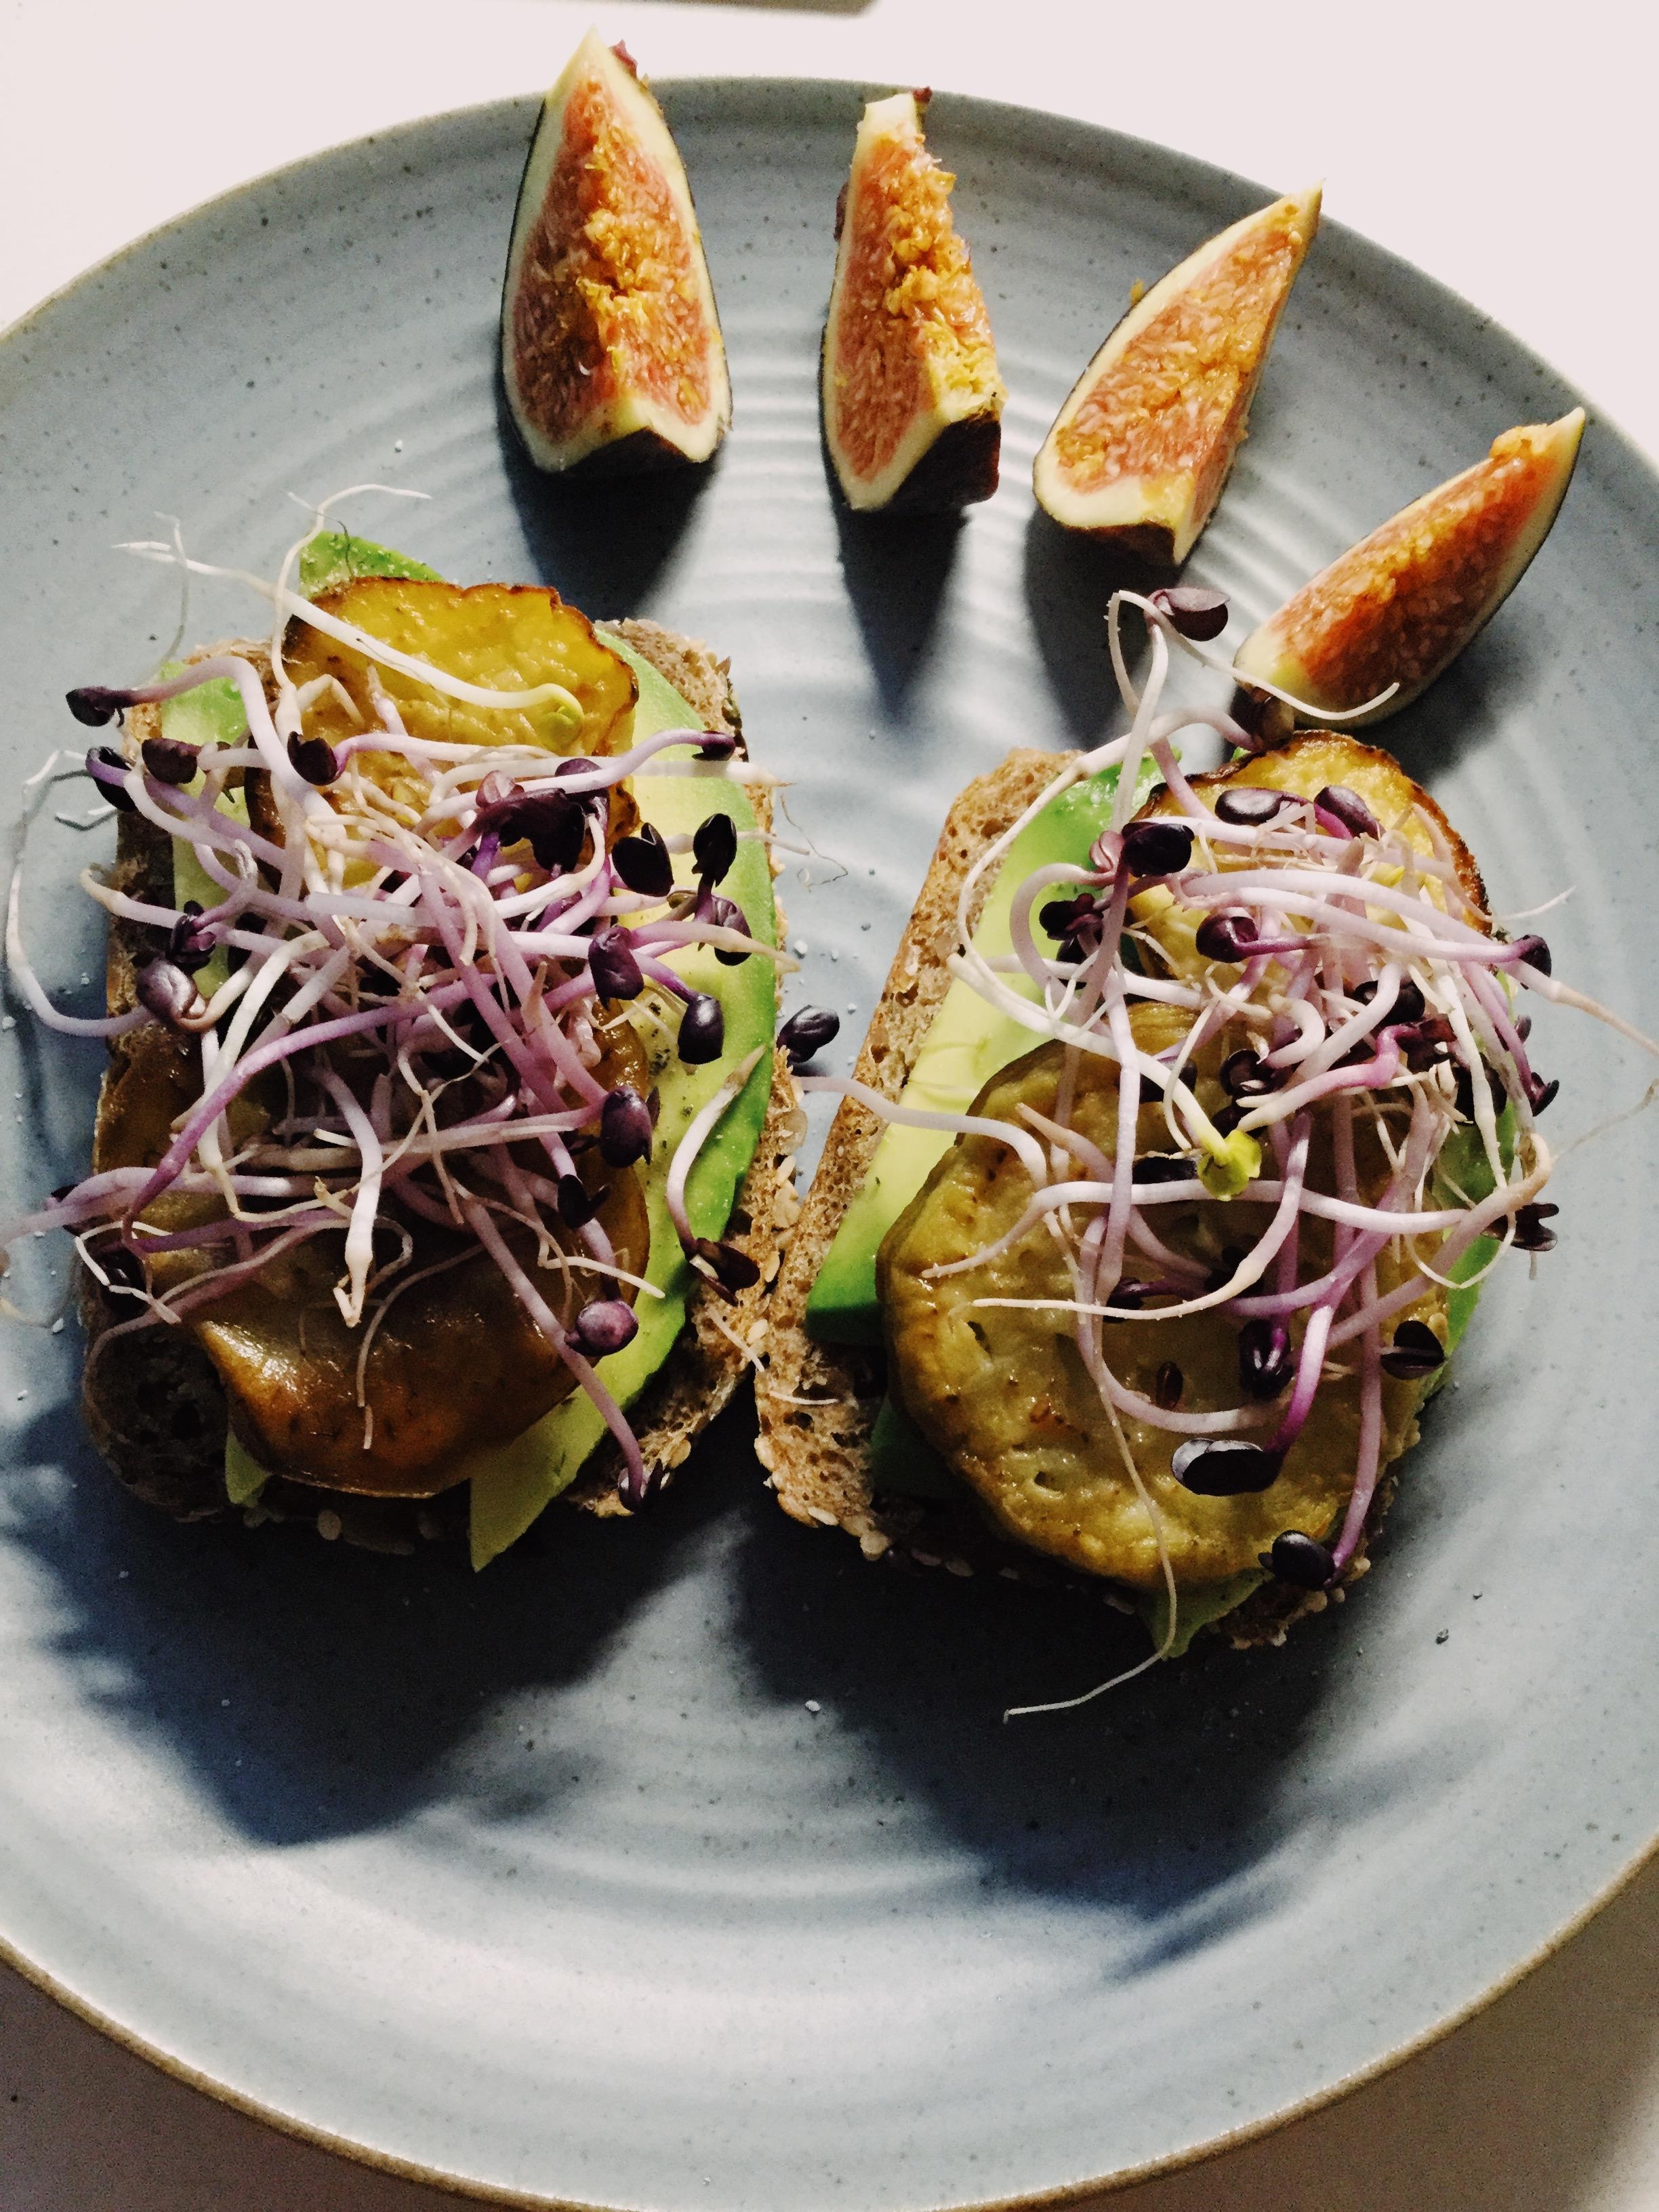 Avocadobrot mit gegrillter Aubergine und Rettichsprossen 😍 #foodlove #vegan #gesund #foodismedicine #lecker 